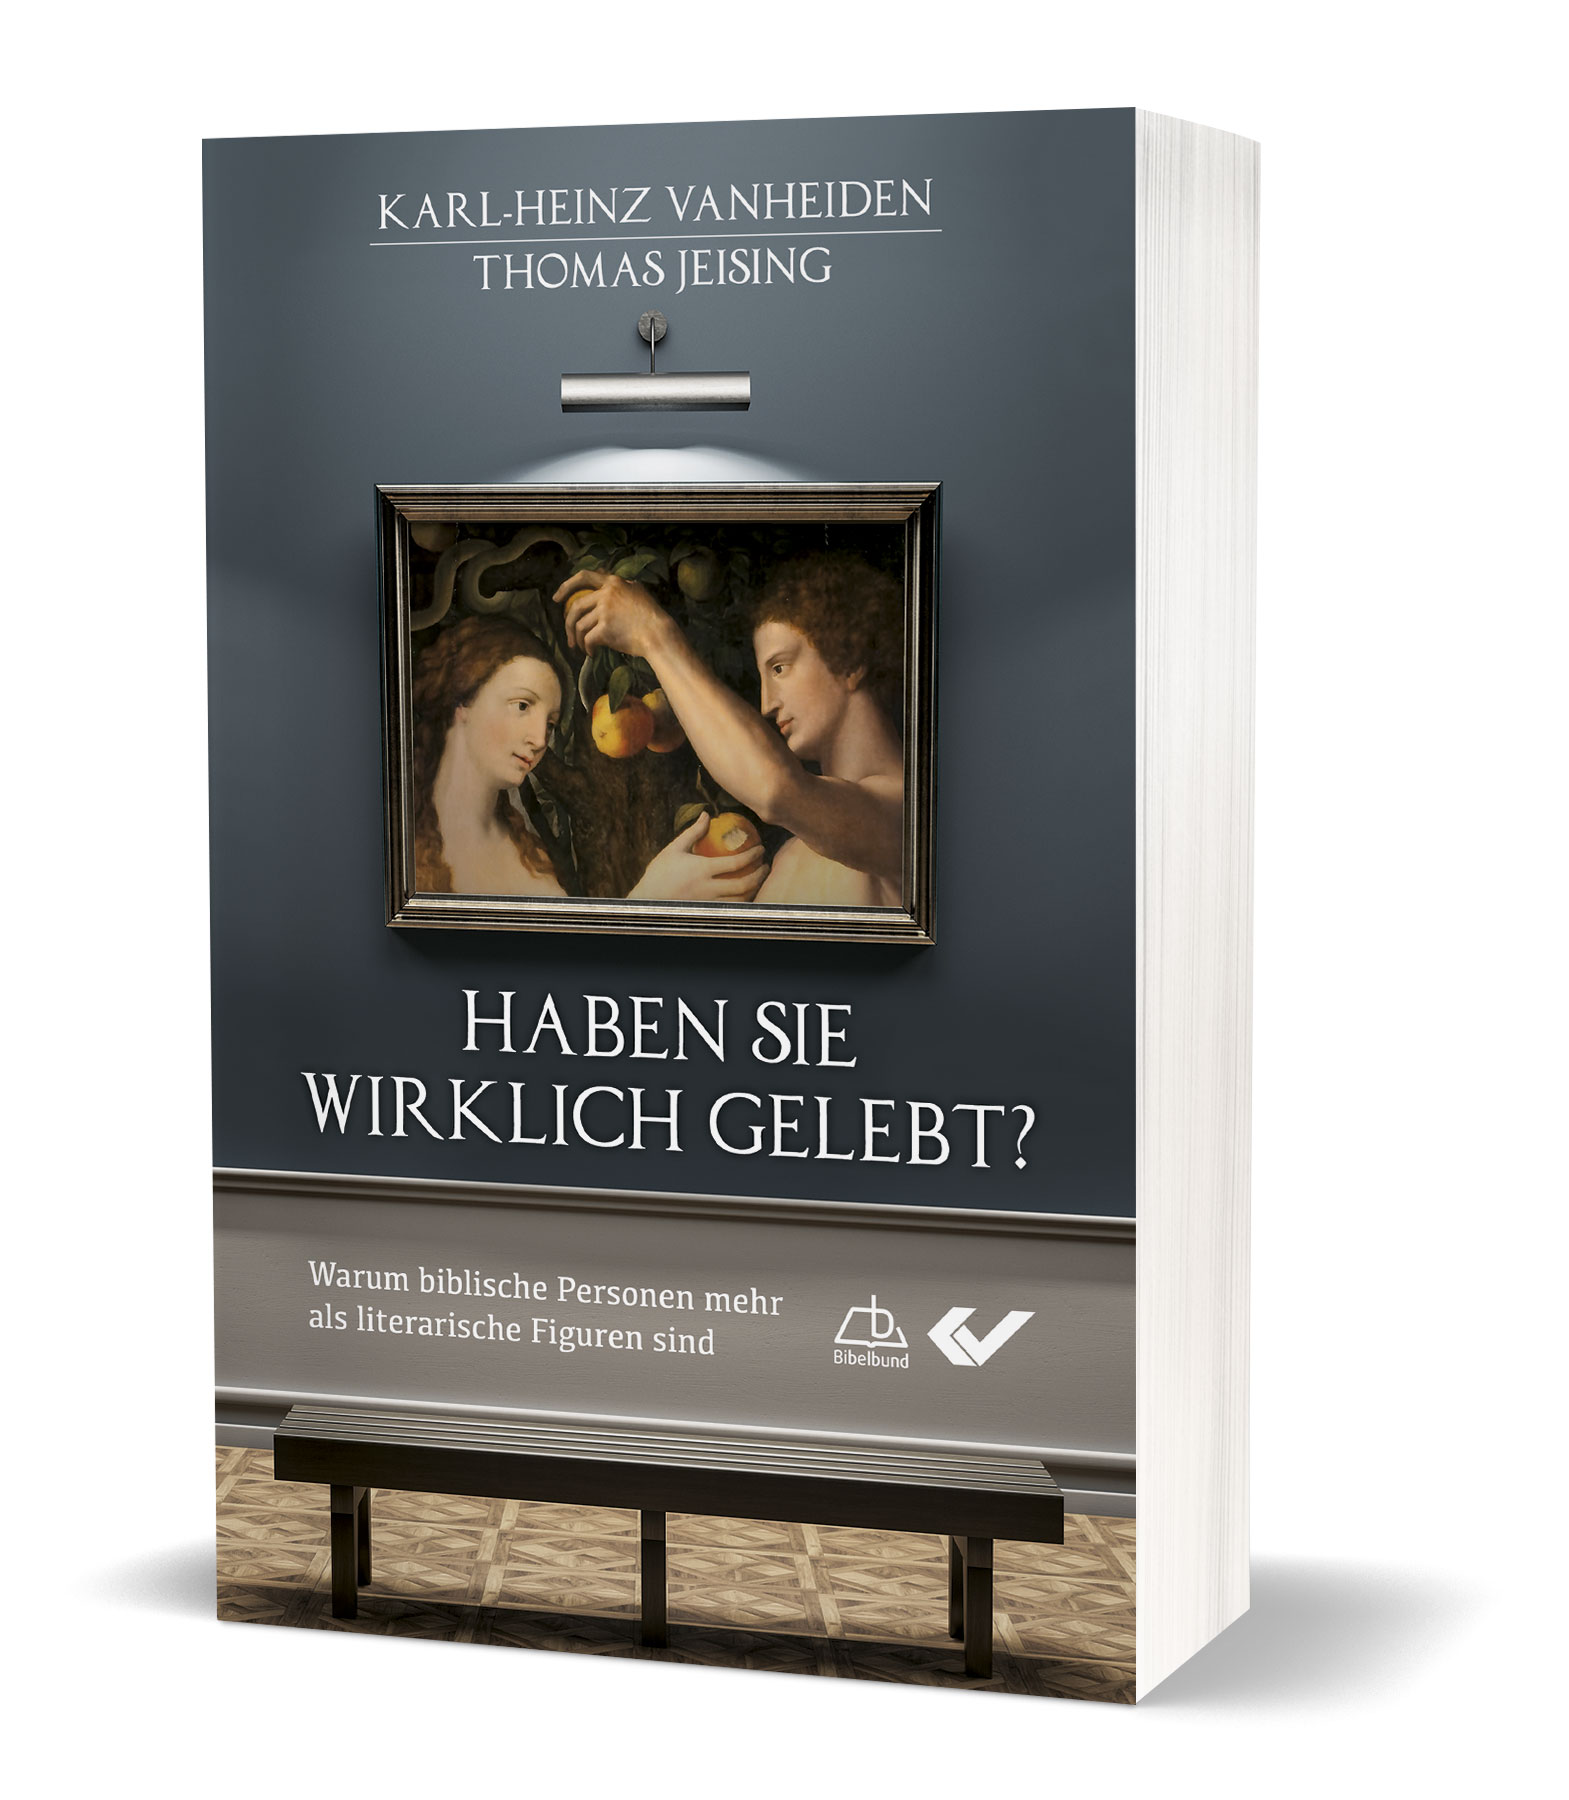 Karl-Heinz Vanheiden/Thomas Jeising: Haben sie wirklich gelebt? - Warum biblische Personen mehr als literarische Figuren sind